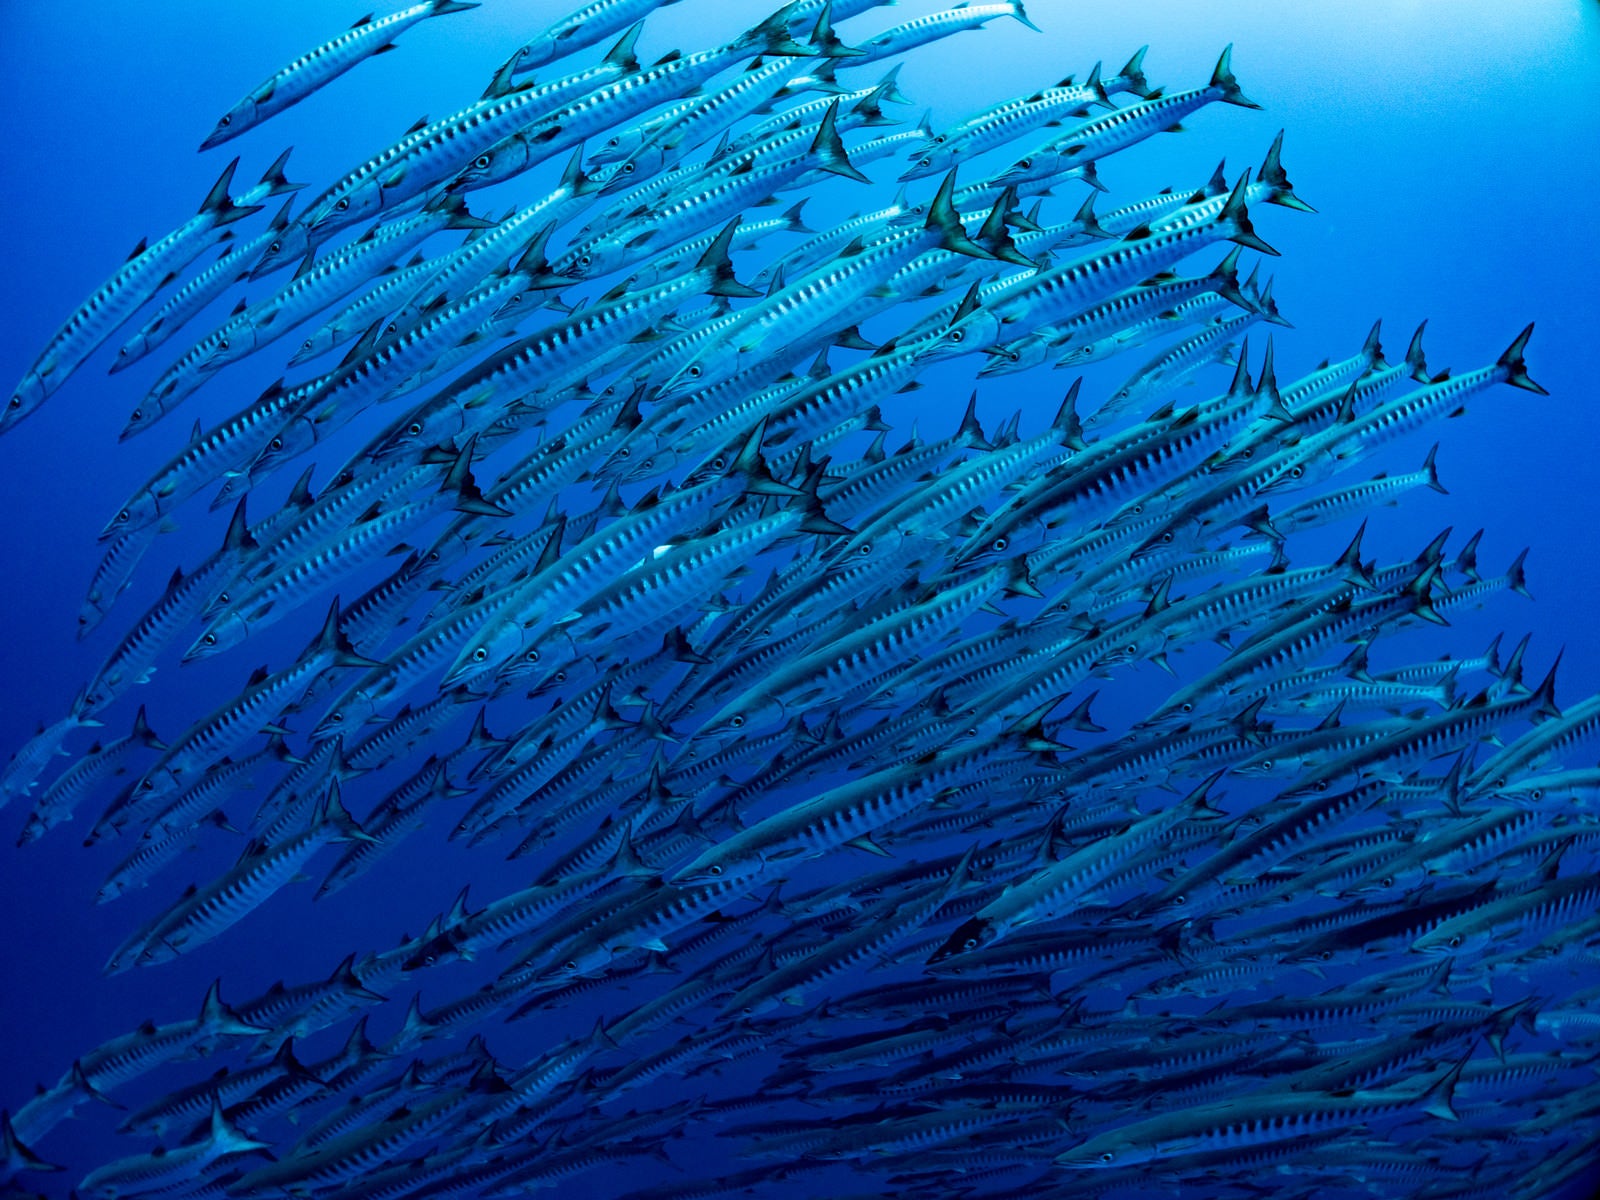 「海中を群れで泳ぐバラクーダ」の写真